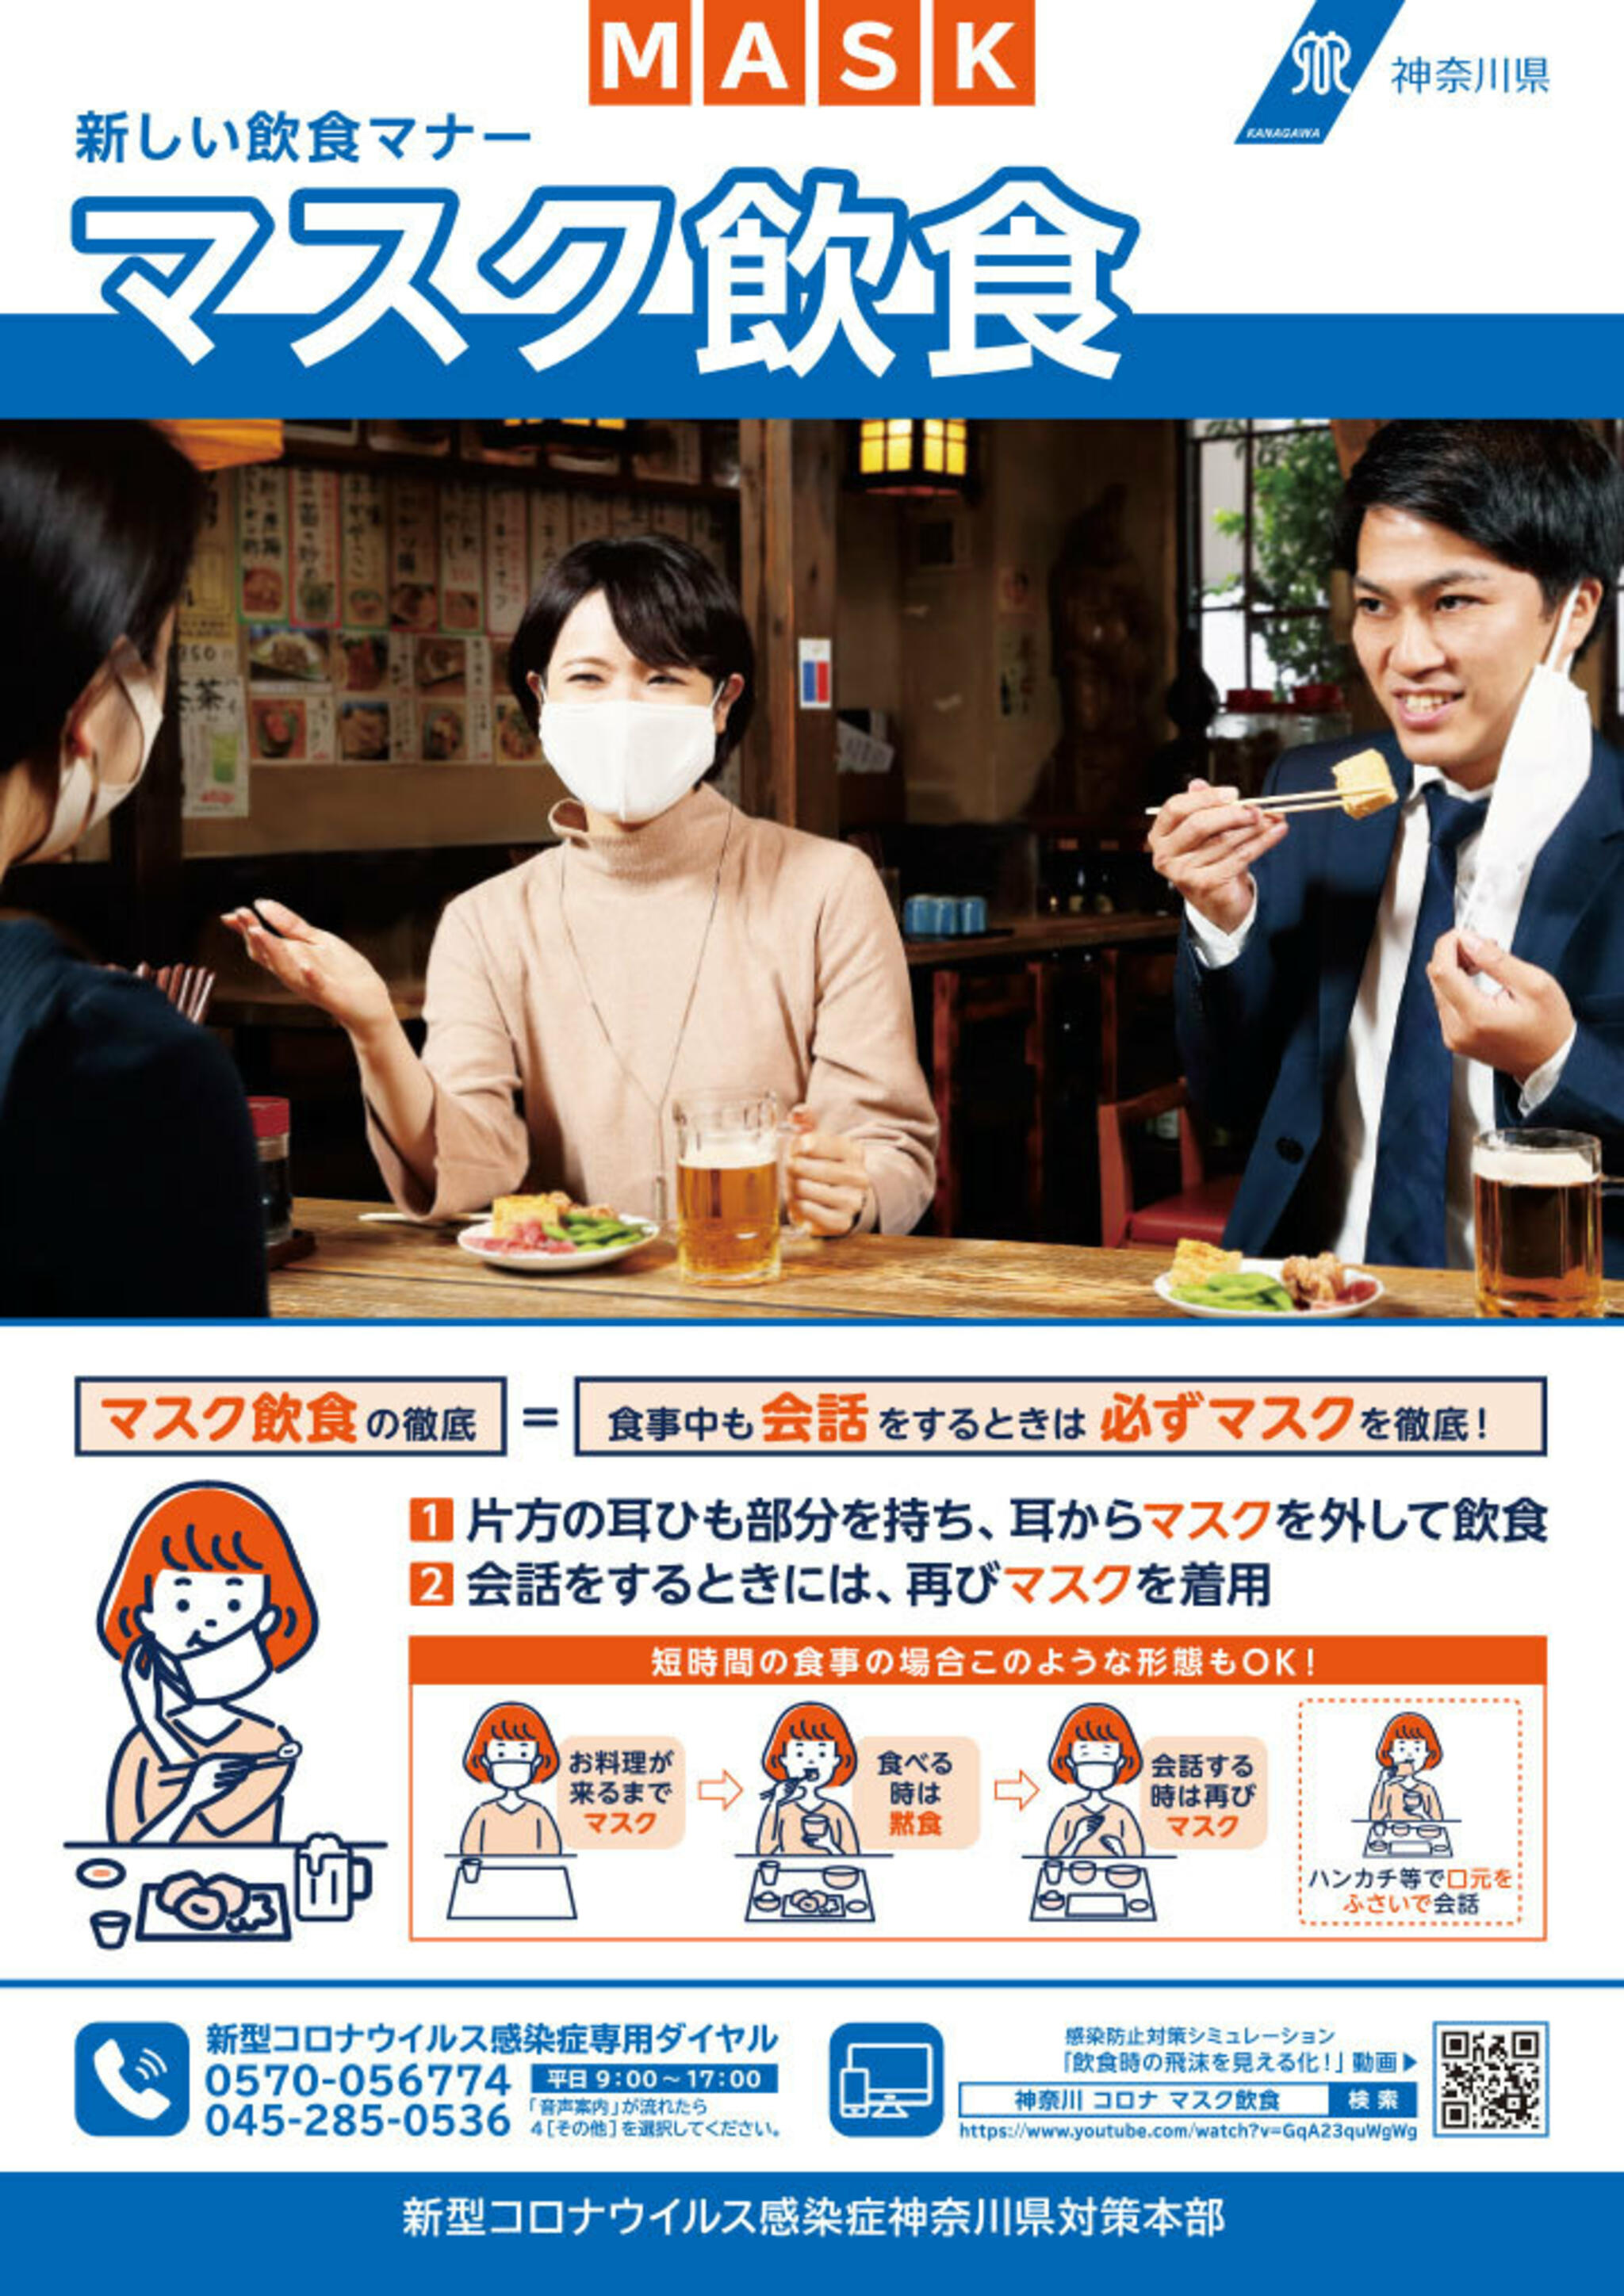 かばのおうどん 横浜元町本店からのお知らせ(かばのおうどんは神奈川県の「マスク飲食」に取り組んでいます。)に関する写真